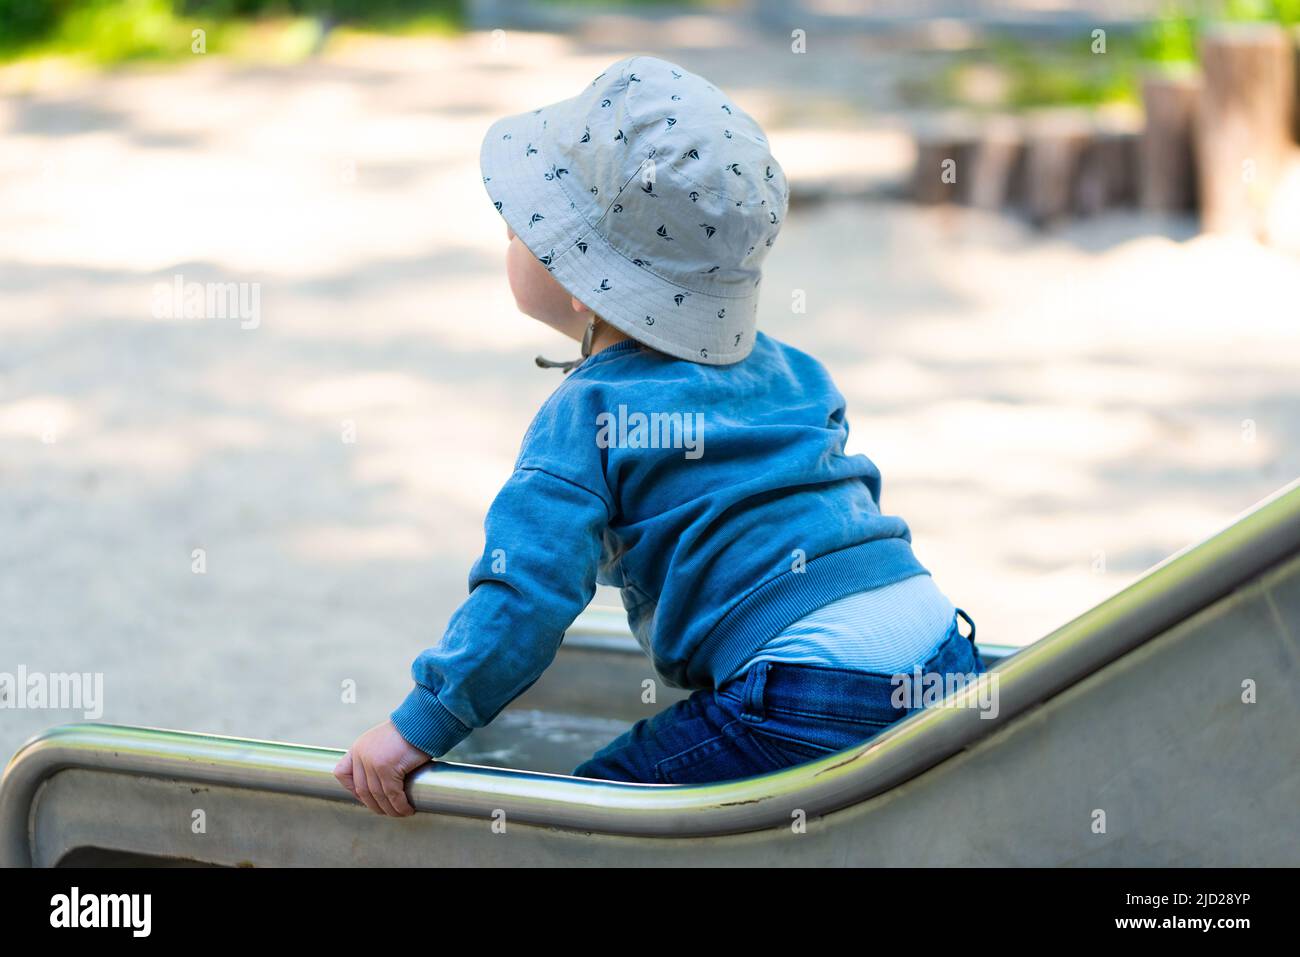 Rückansicht eines Kleinkindes auf der Rutsche, eines einjährigen Jungen mit Rutsche auf dem Spielplatz Stockfoto